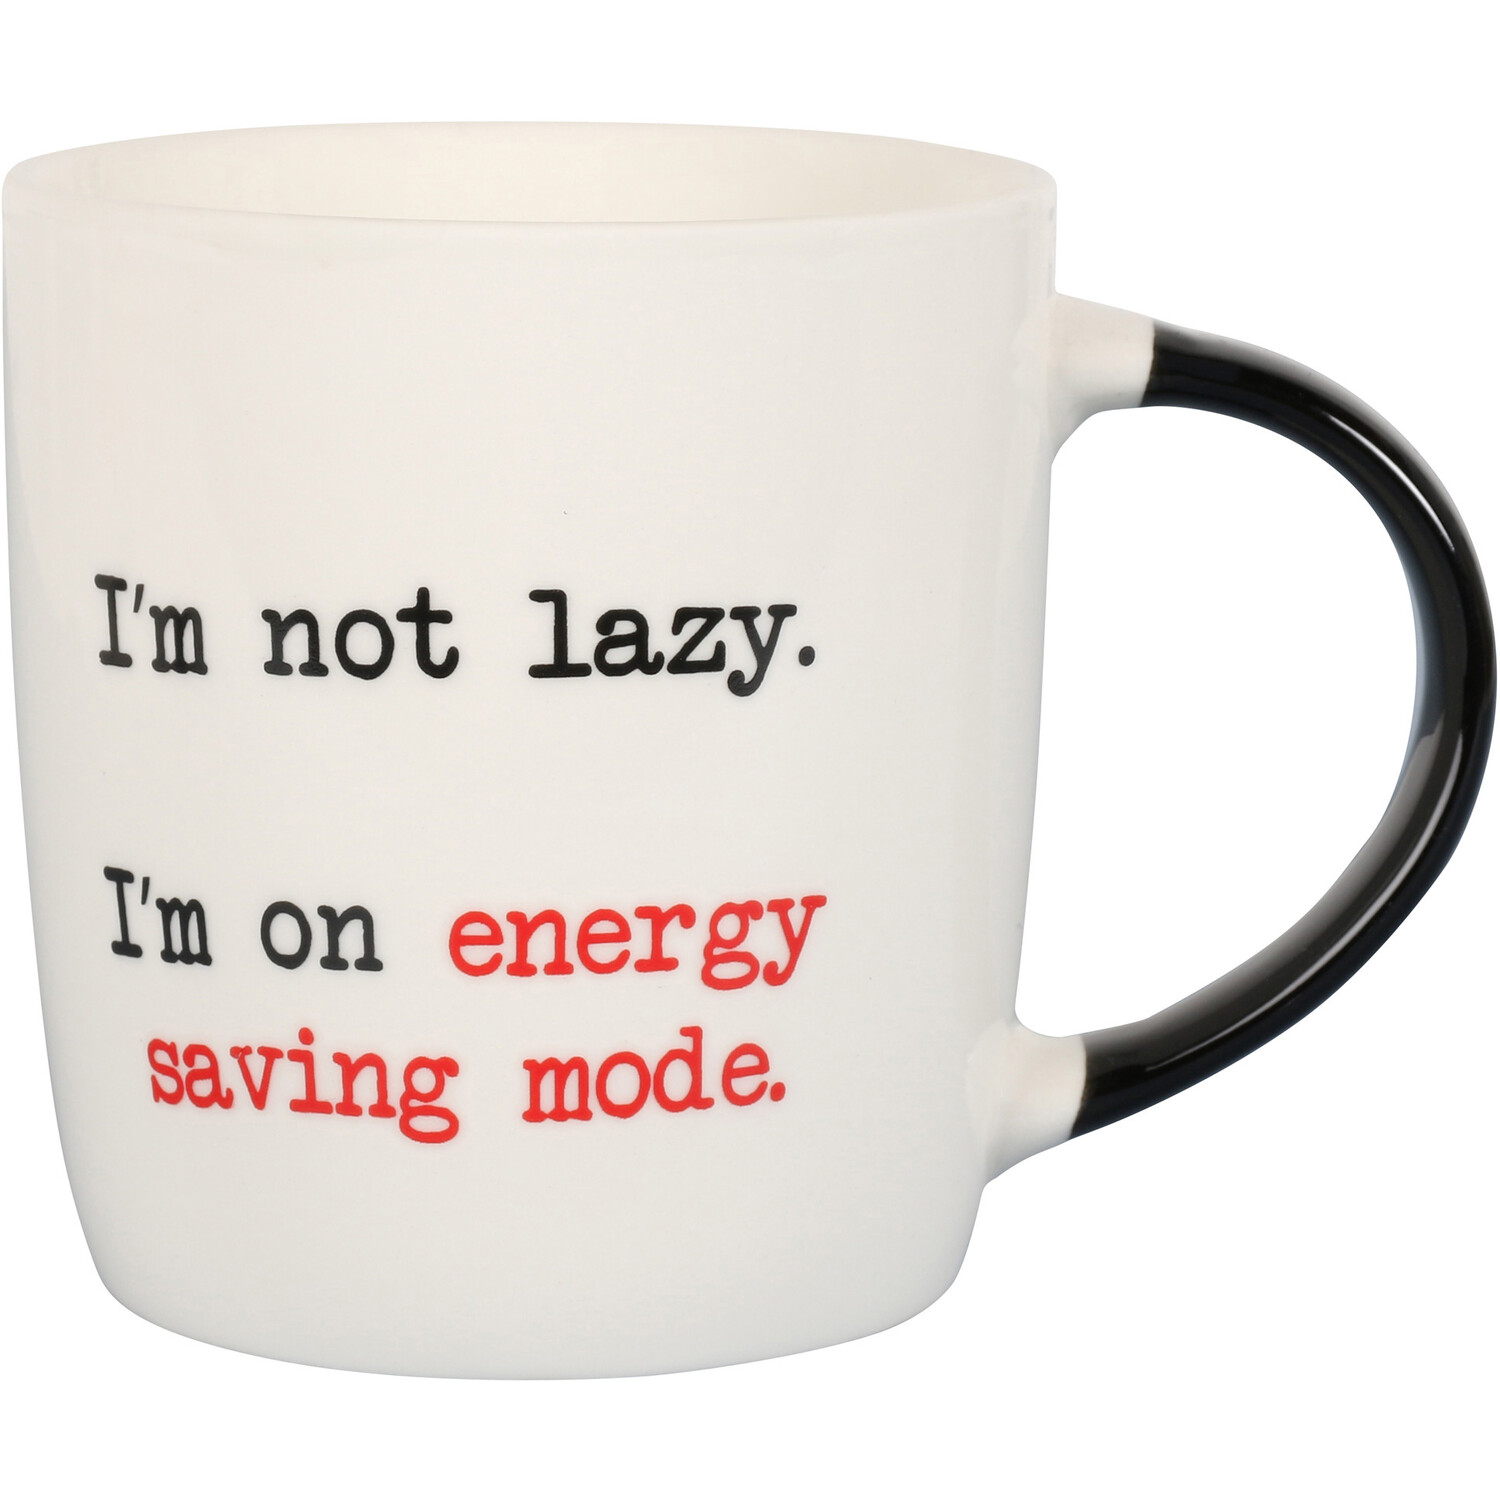 I'm Not Lazy Dublin Mug - White Image 1